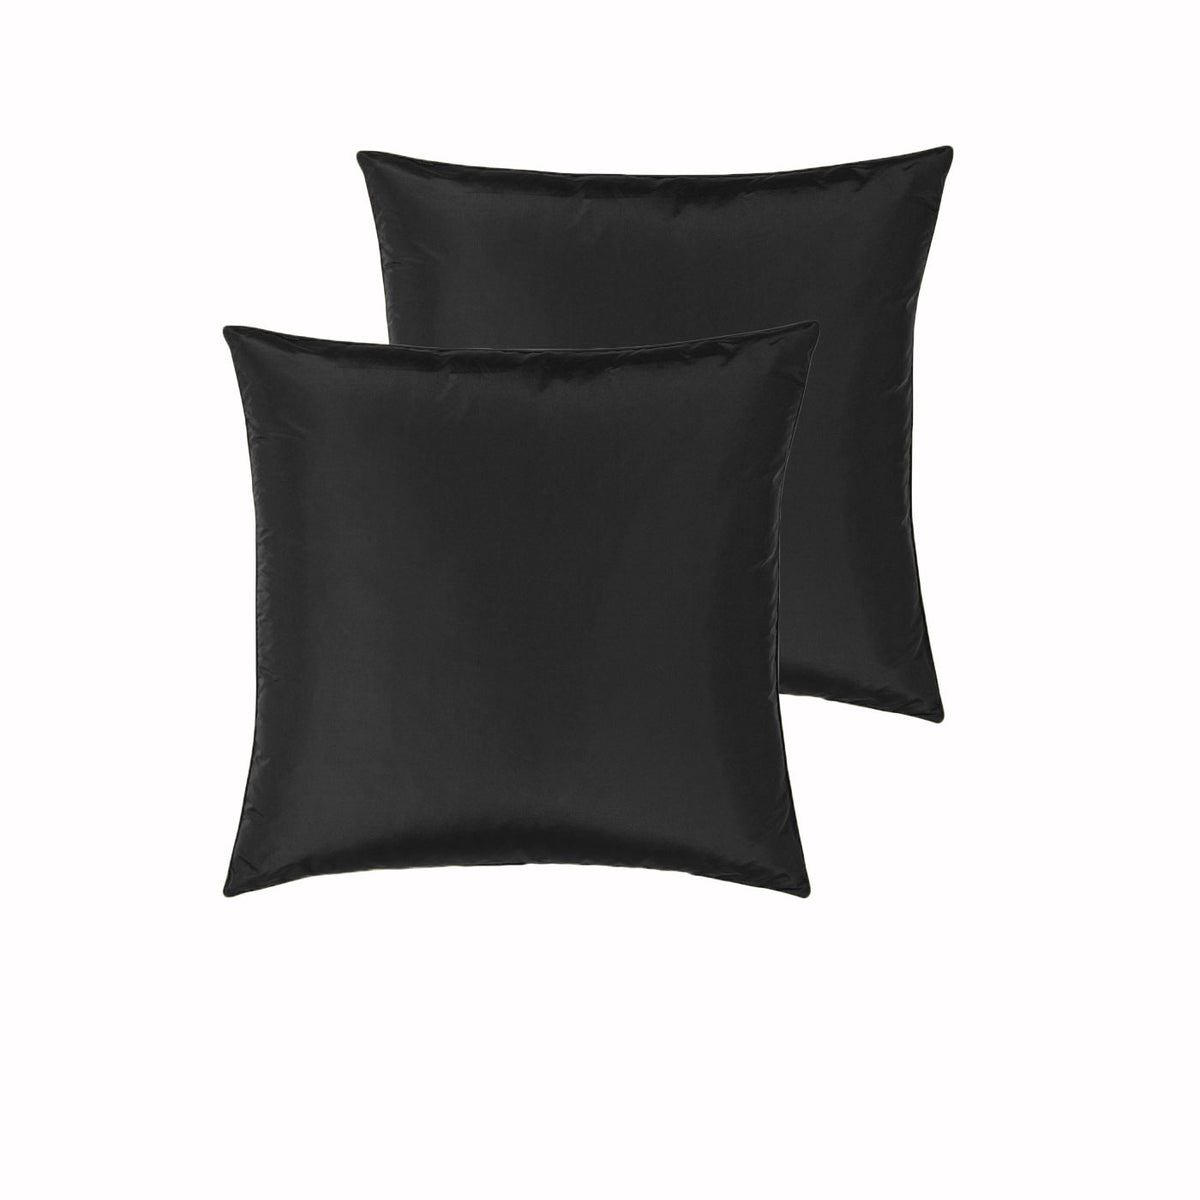 PepperMIll Satin European Pillowcases ( Pair ) BLACK